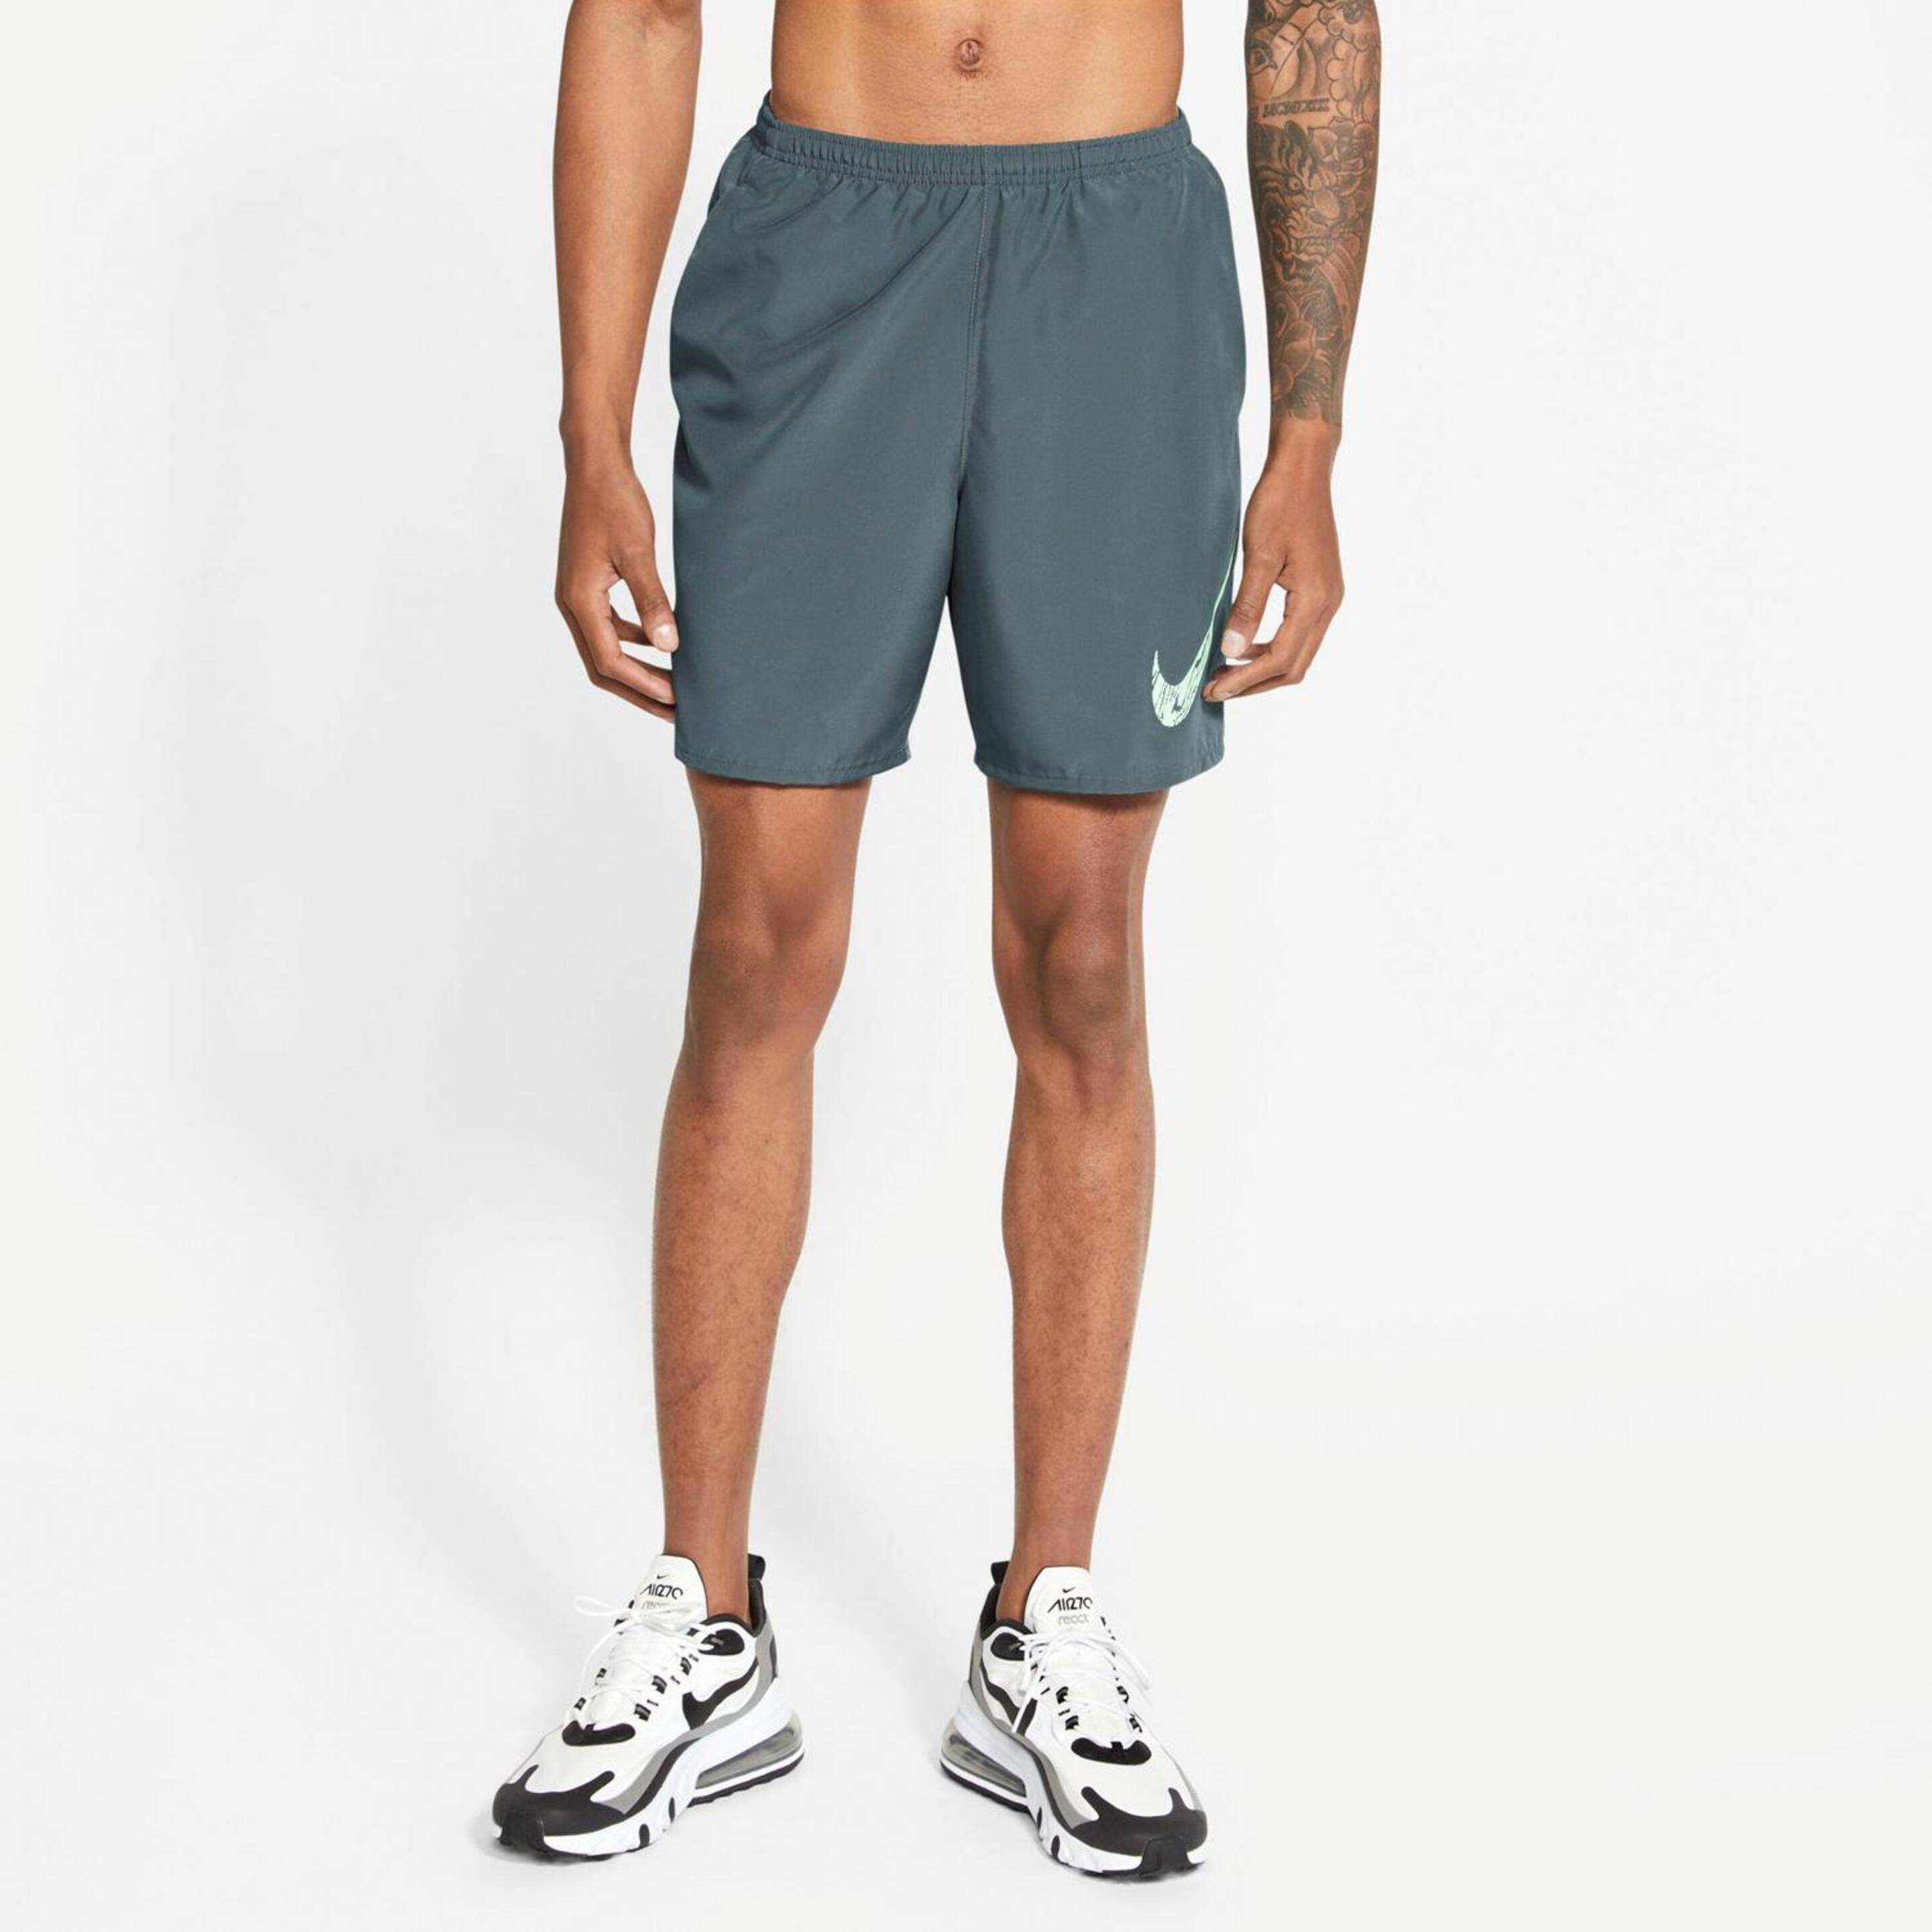 Clações Nike Running